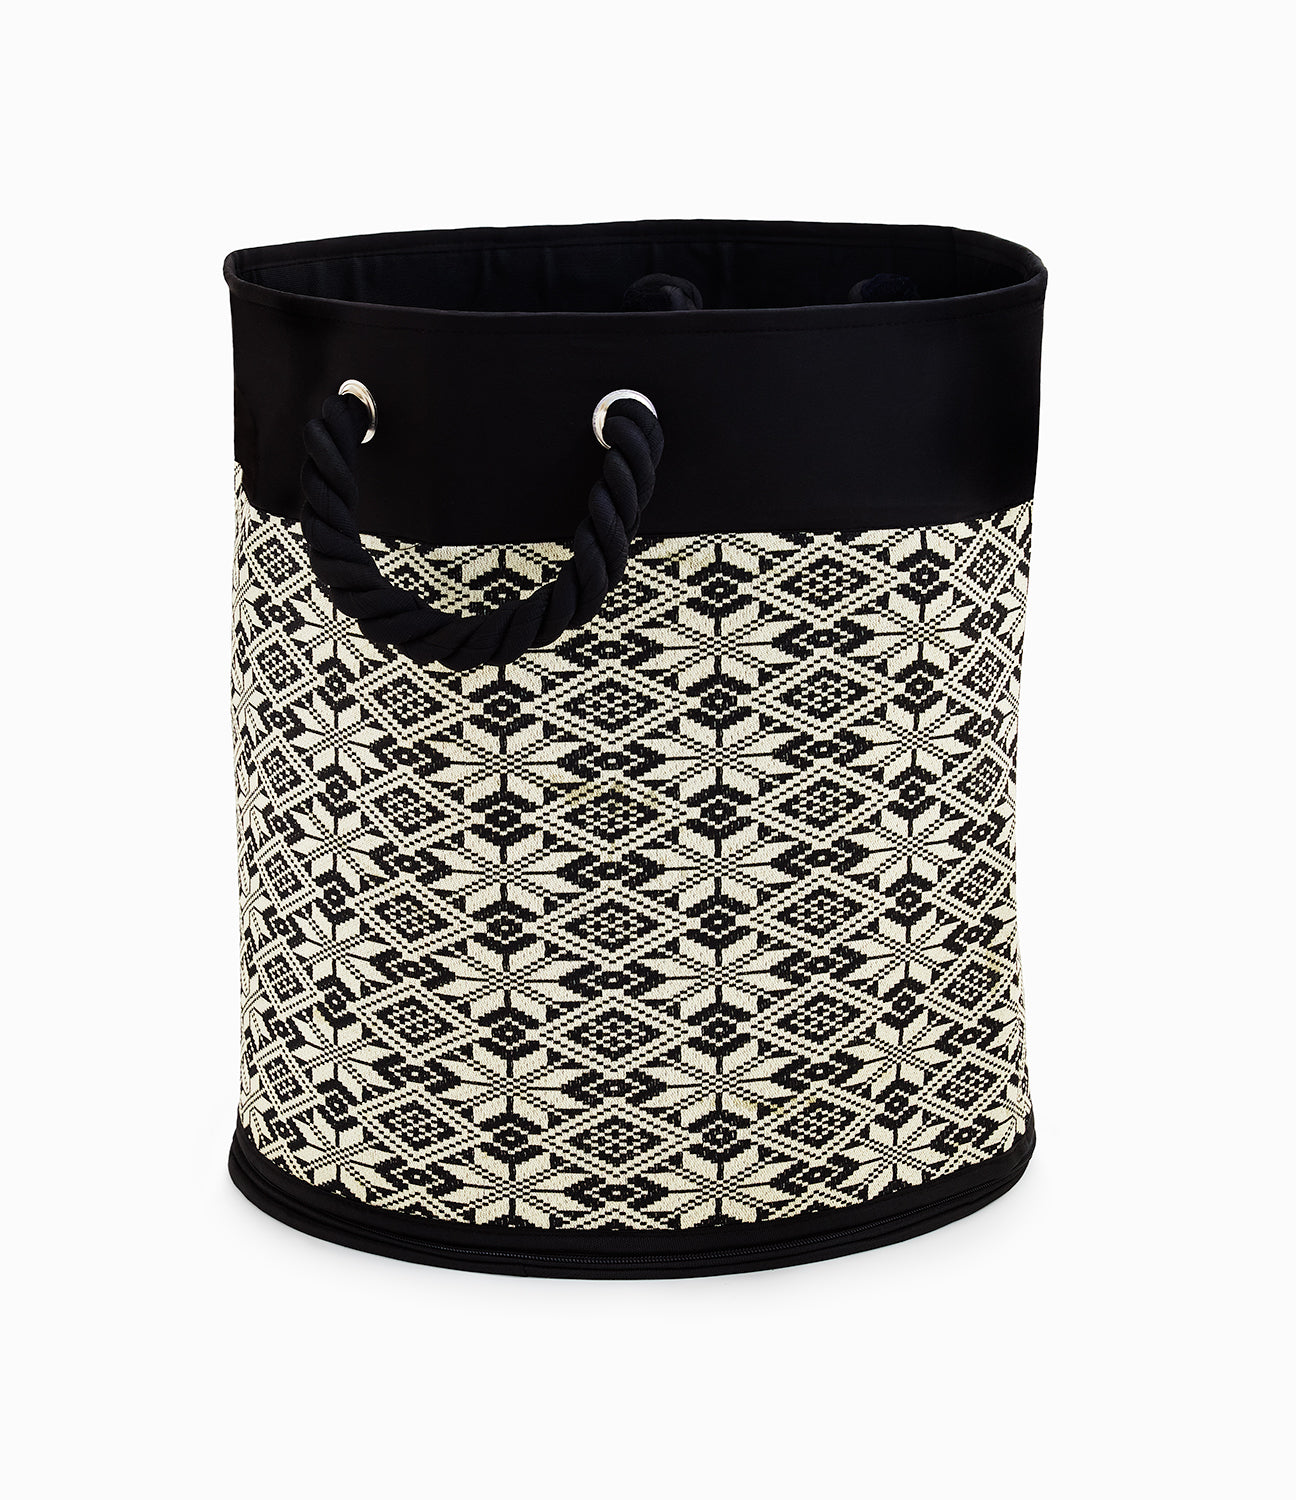 Charcoal Black & White - Foldable Laundry Basket